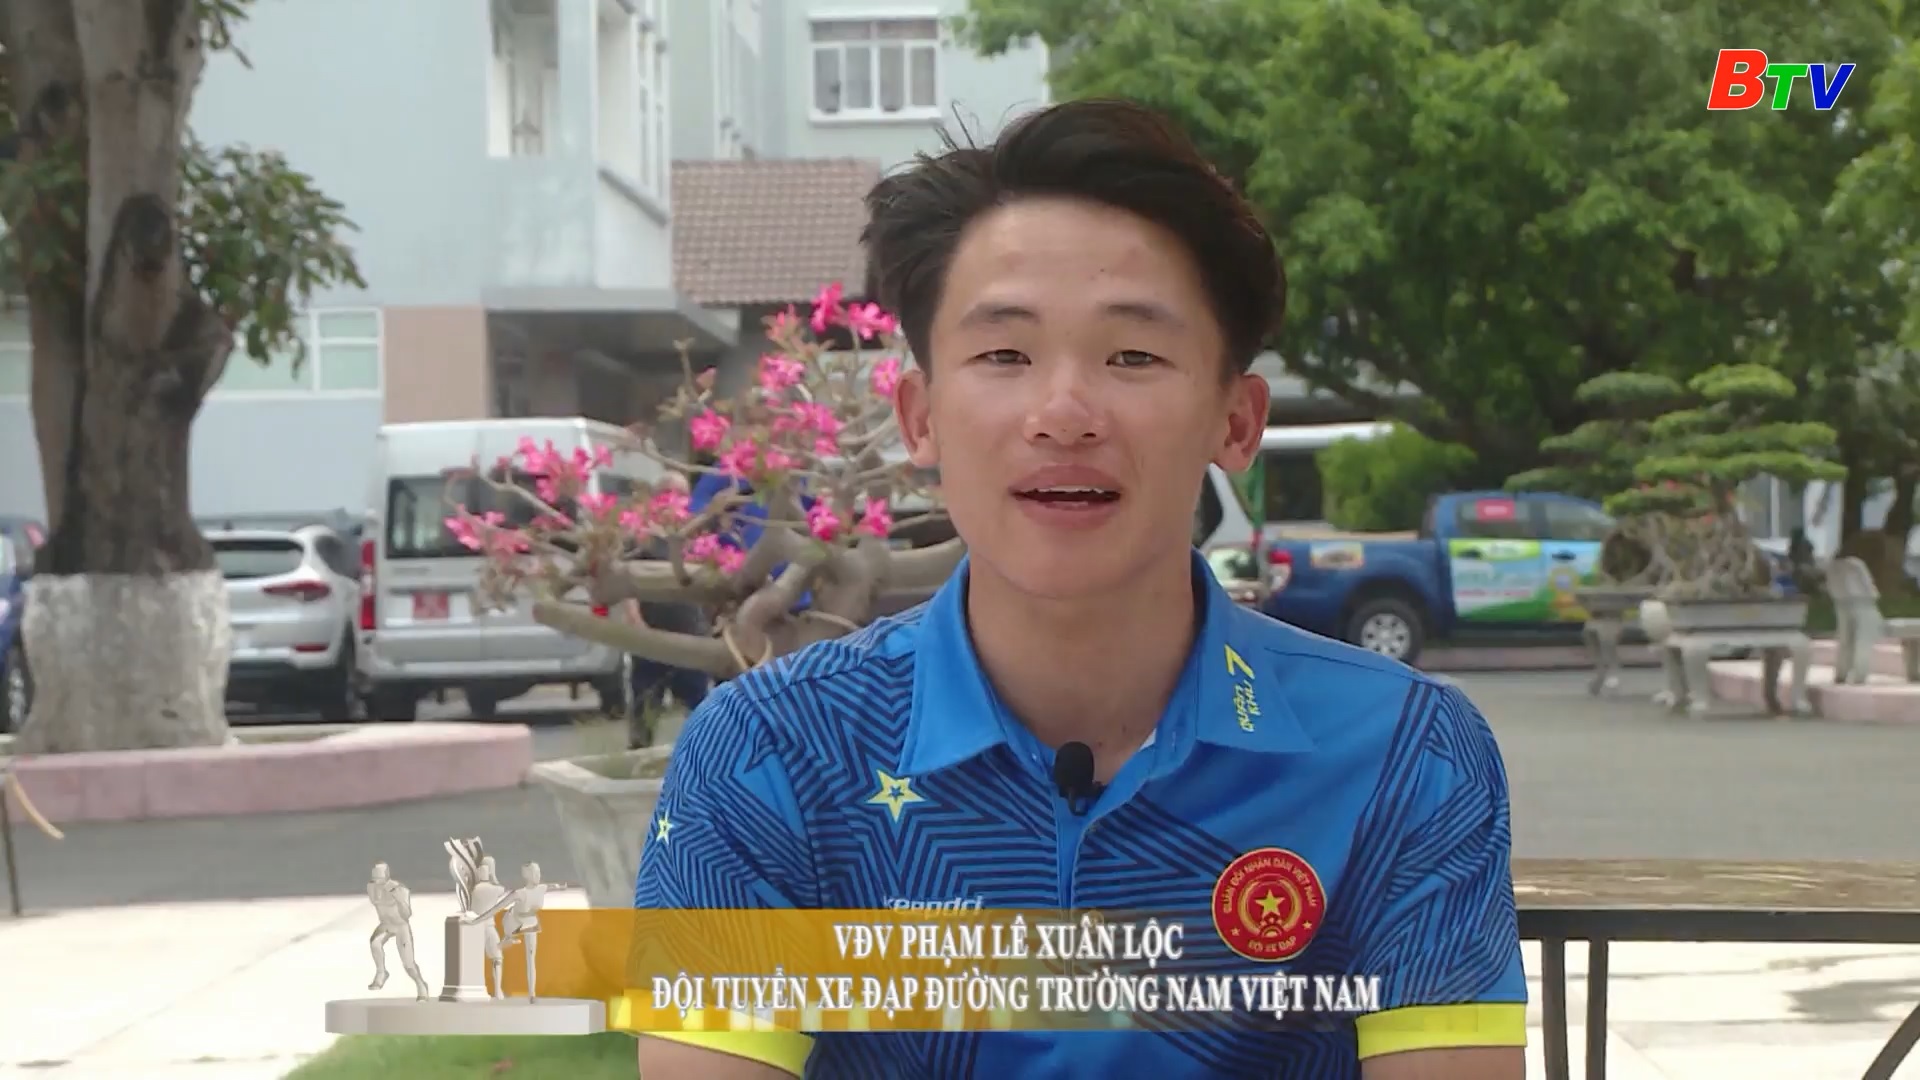 VĐV xe đạp Phạm Lê Xuân Lộc - Đội tuyển xe đạp đường trường Việt Nam